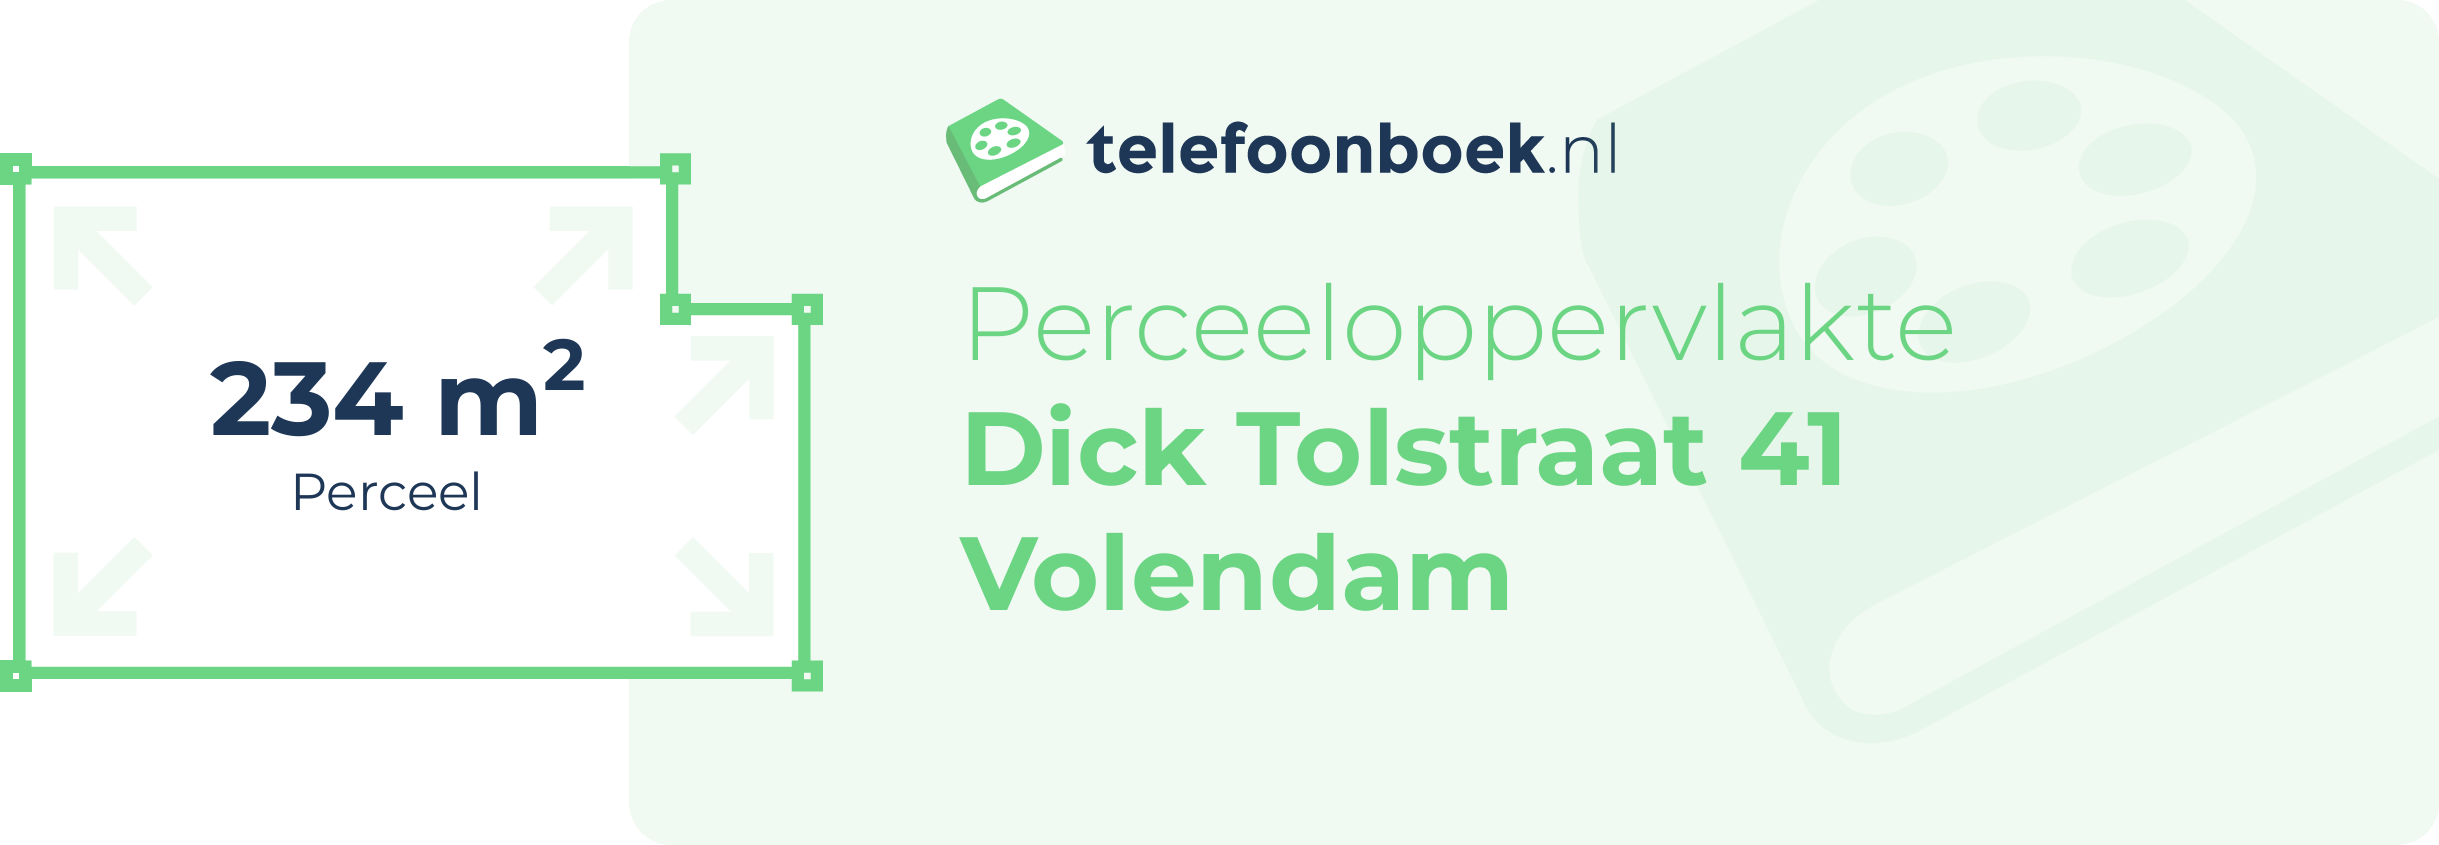 Perceeloppervlakte Dick Tolstraat 41 Volendam